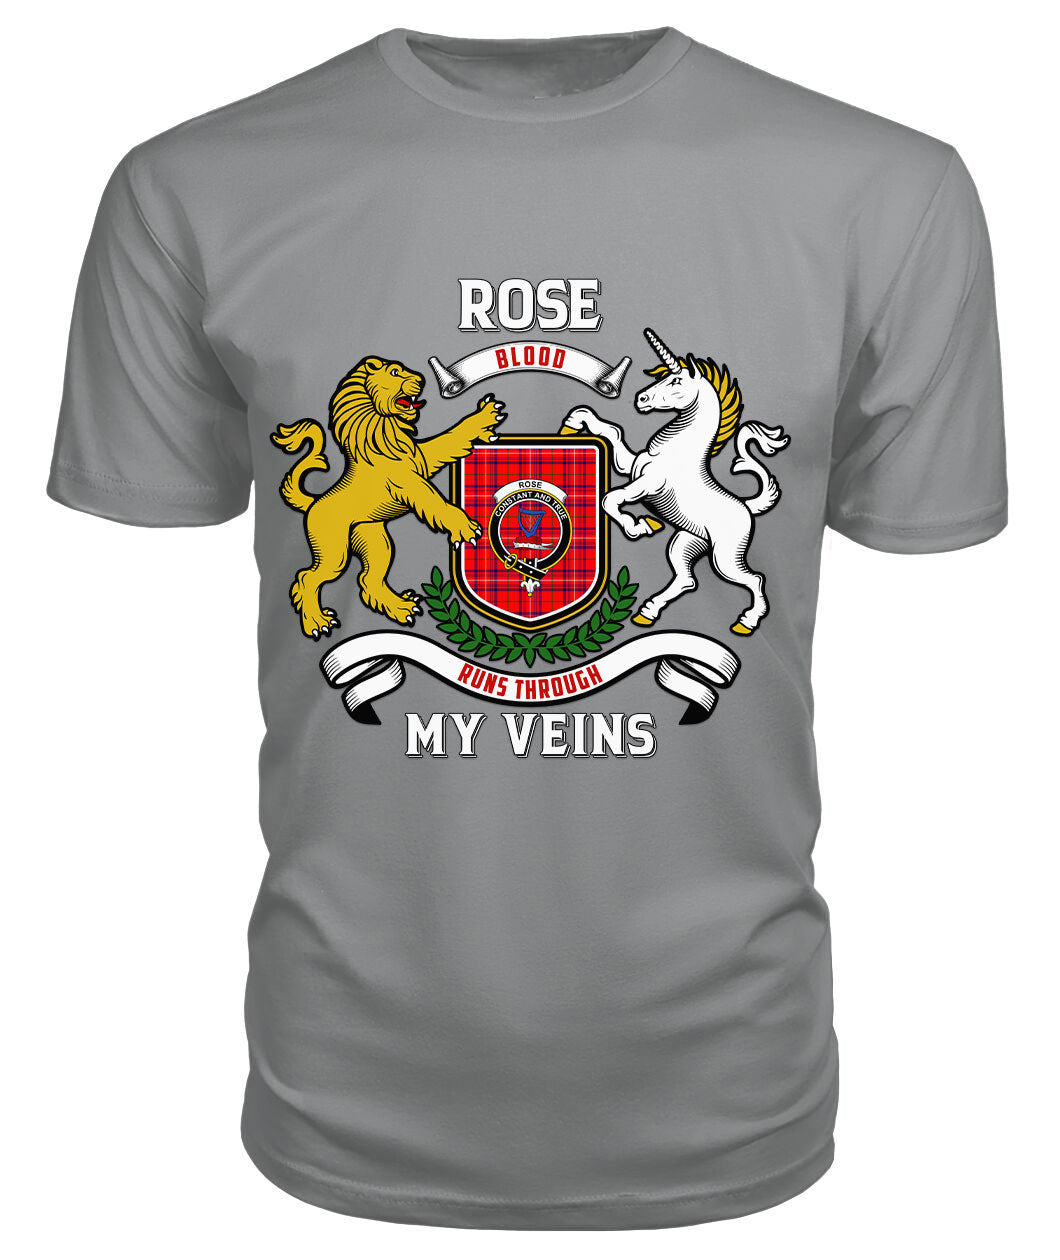 Rose Modern Tartan Crest 2D T-shirt - Blood Runs Through My Veins Style